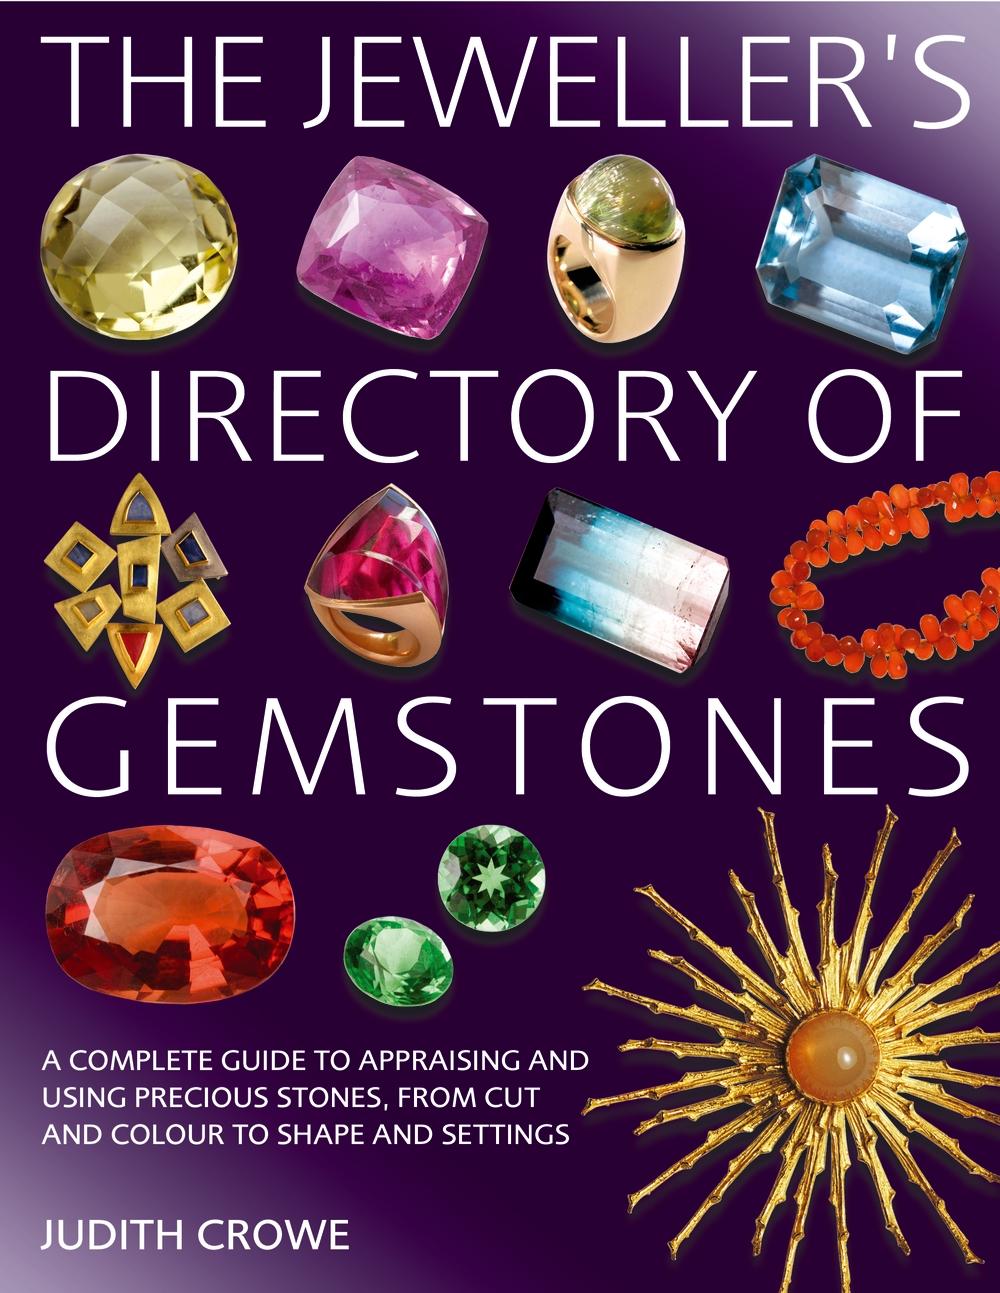 Jeweller's Directory of Gemstones